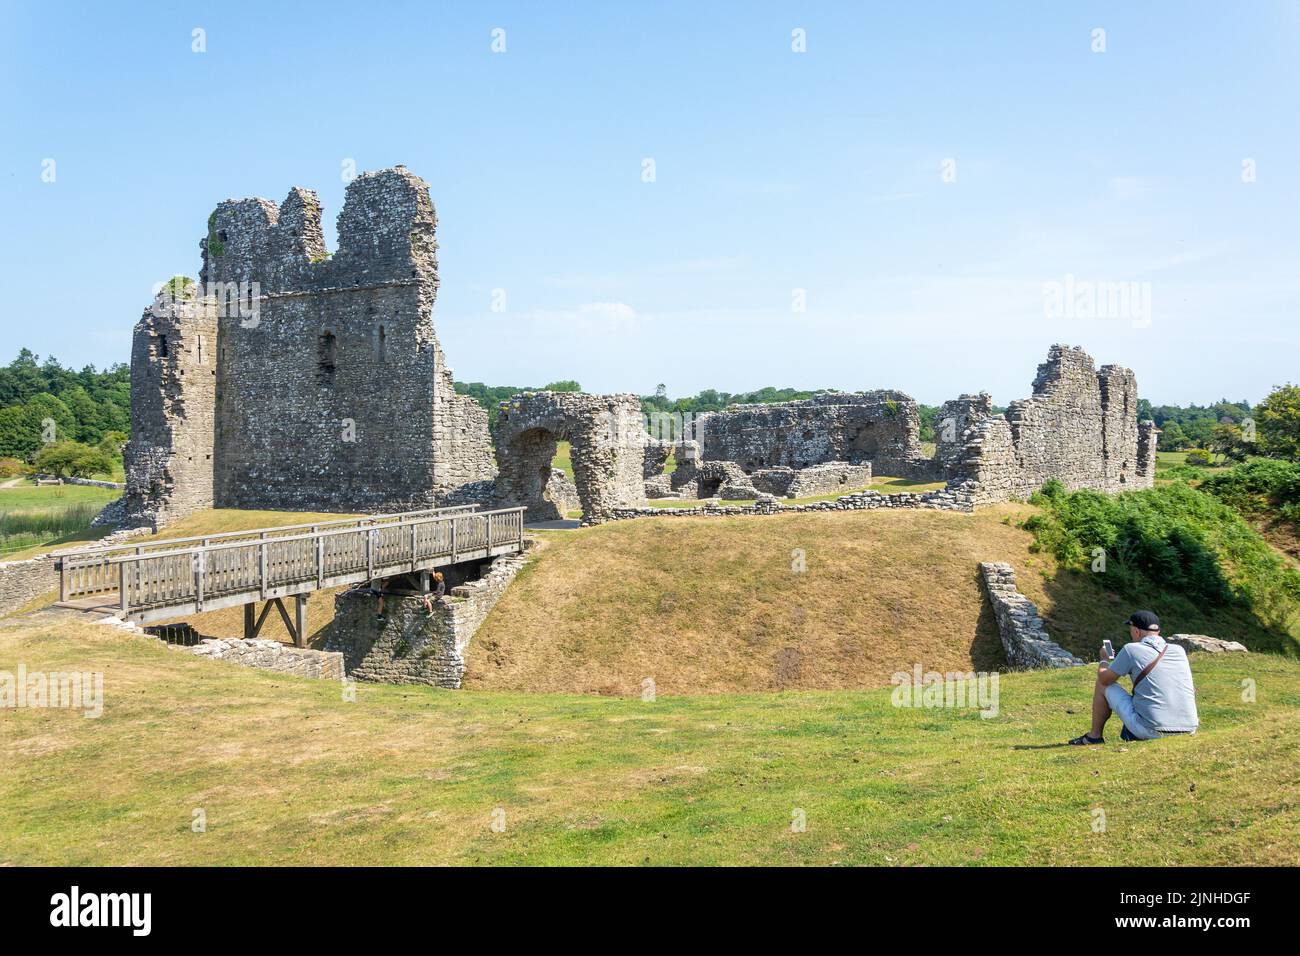 Ruinas del castillo de piedra normando, el castillo de Ogmore, Ogmore, el valle de Glamorgan (Bro Morgannwg), Gales (Cymru), Reino Unido Foto de stock